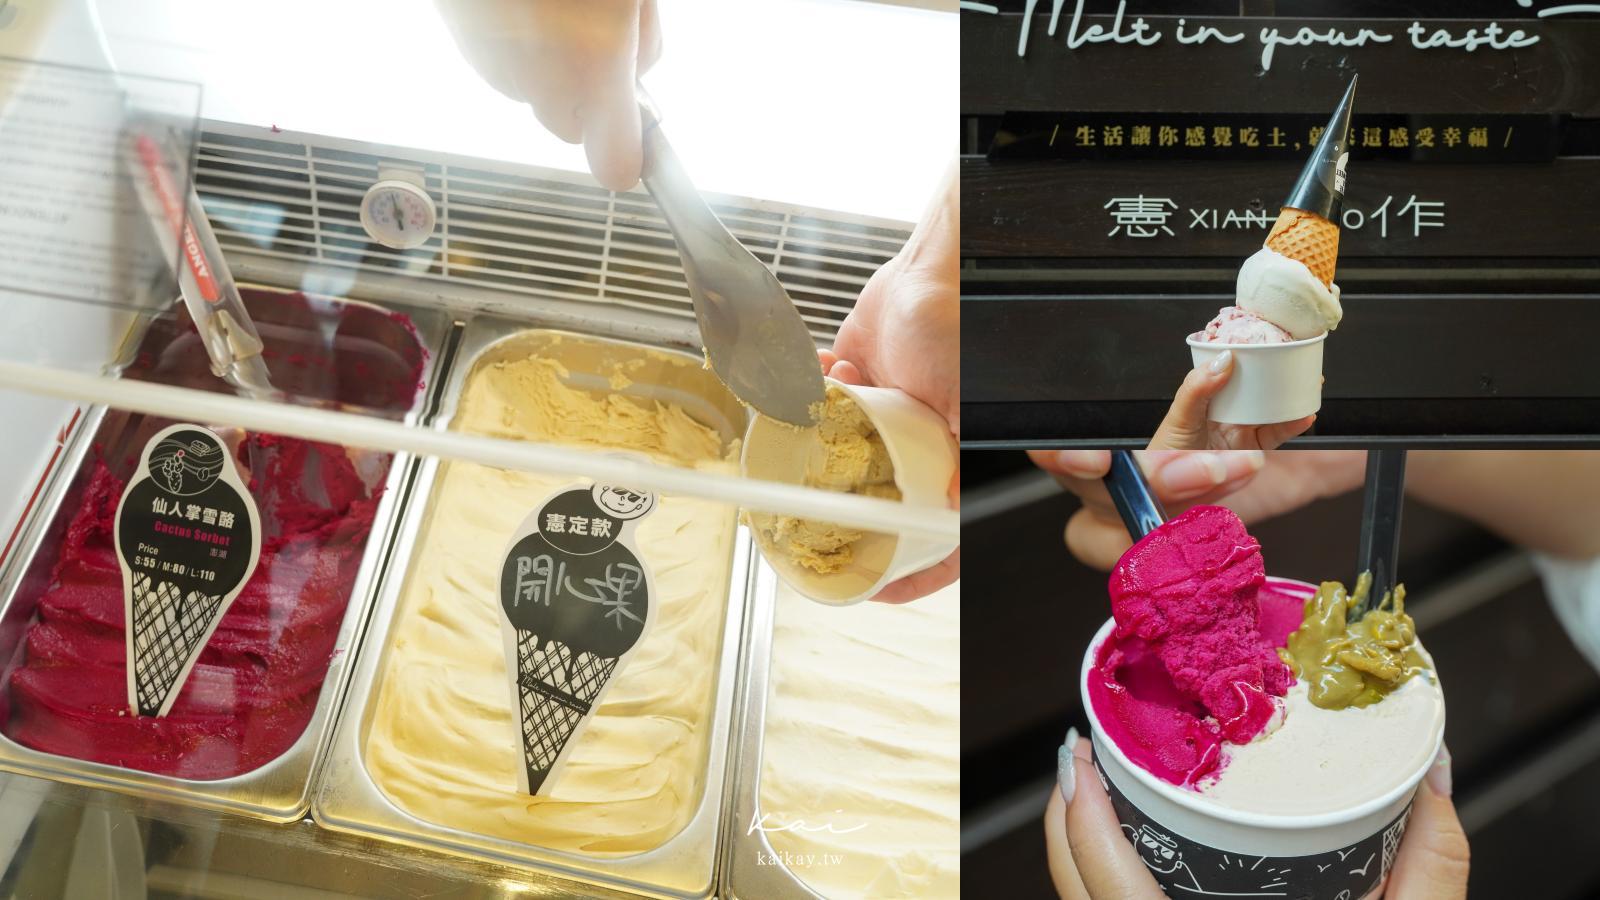 延伸閱讀：☆【澎湖美食】馬公必吃冰品甜點：憲作Gelato冰淇淋。每日現作義式冰淇淋至少7種口味